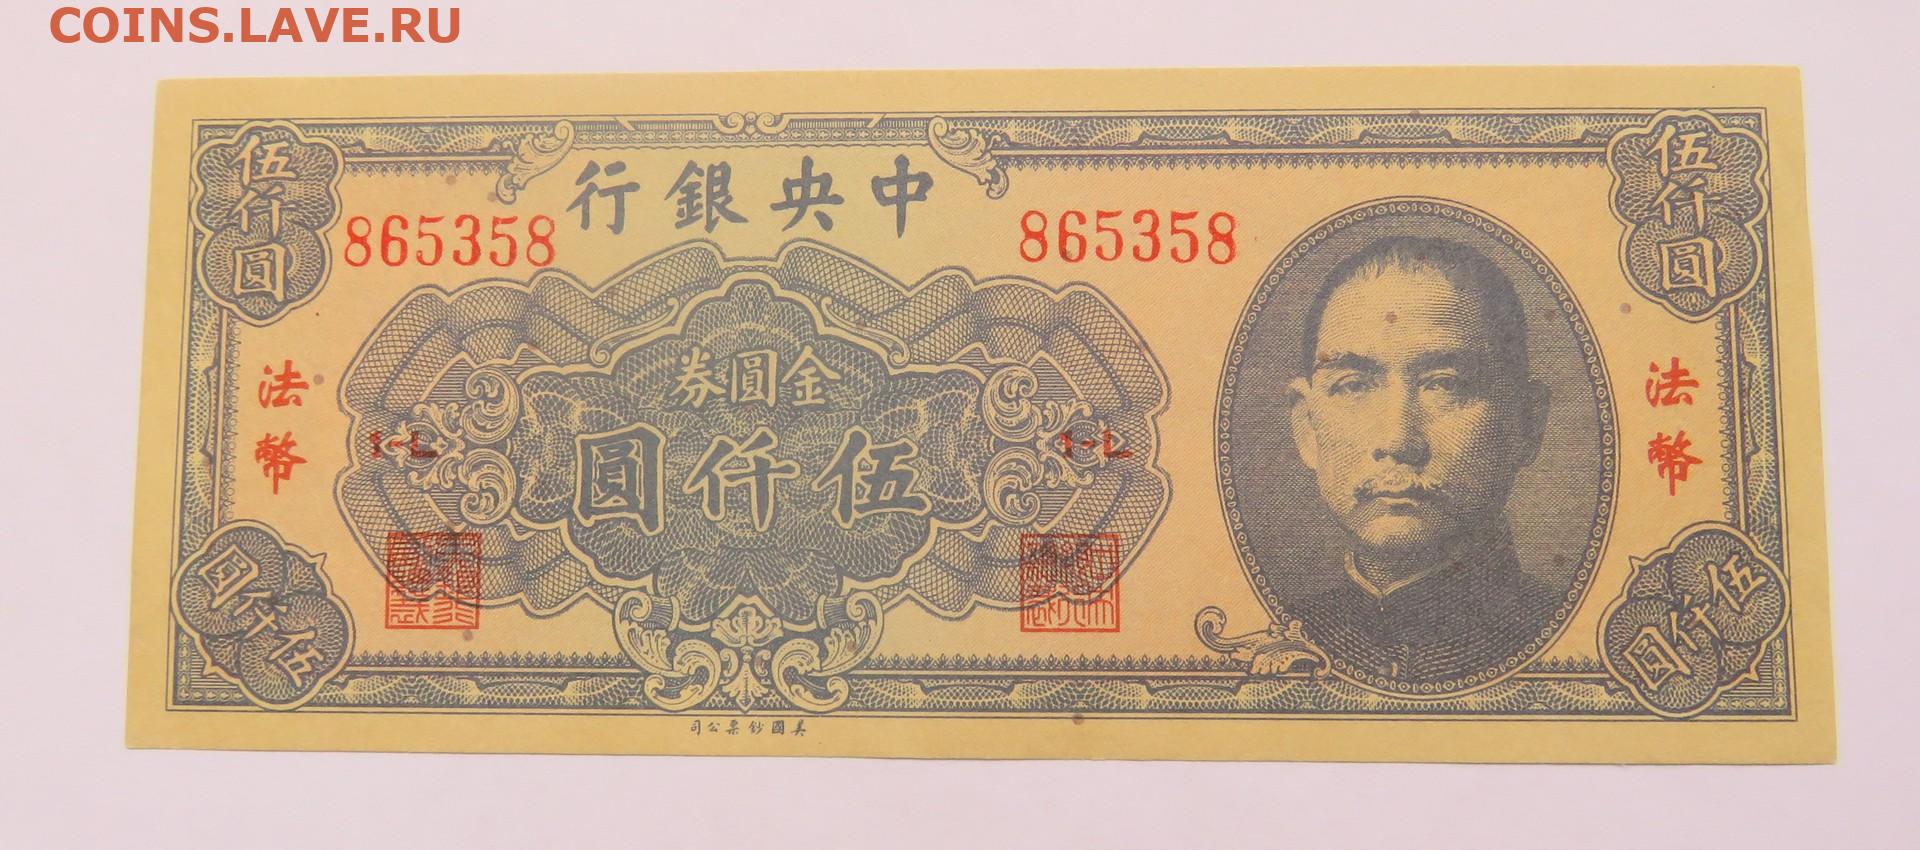 200 000 юаней. 5000 Юаней. Китайский 5000. 5000 Юаней купюра. Юань 1945 года.